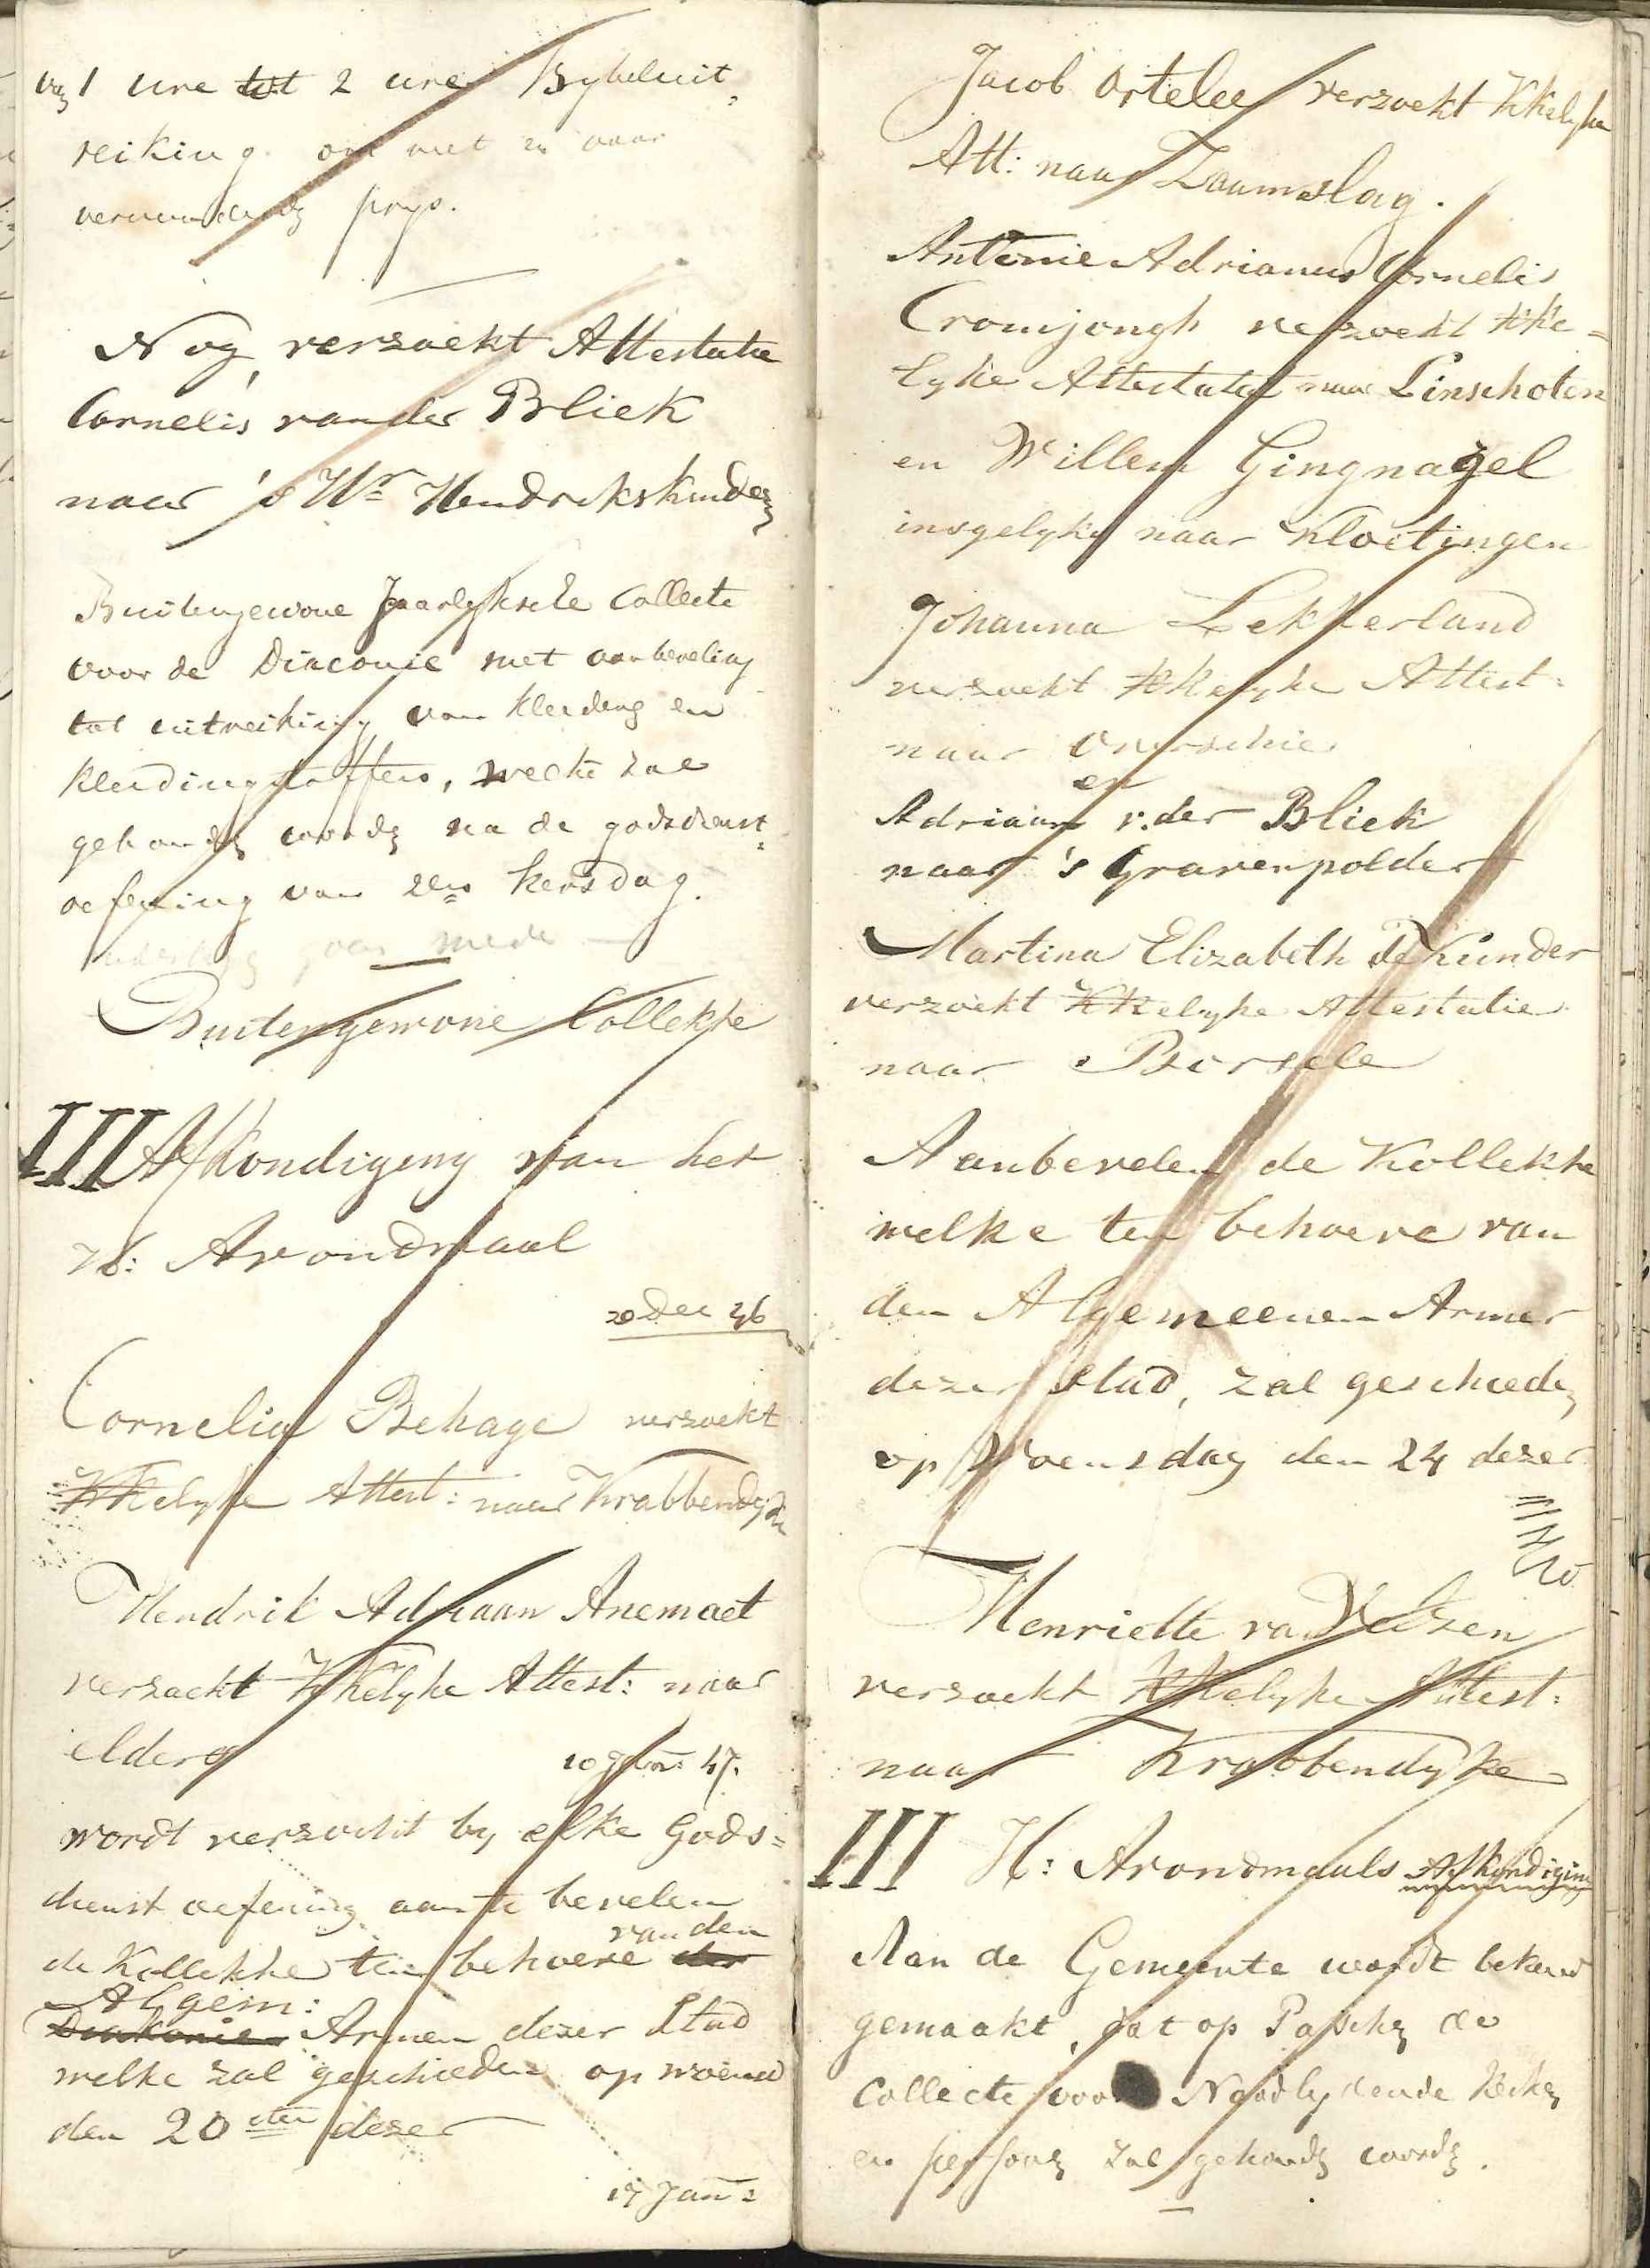 Kanselafkondigingen met een bijzondere collecte, 1846. GAG.arch.herv.kerk, inv.nr. 44.